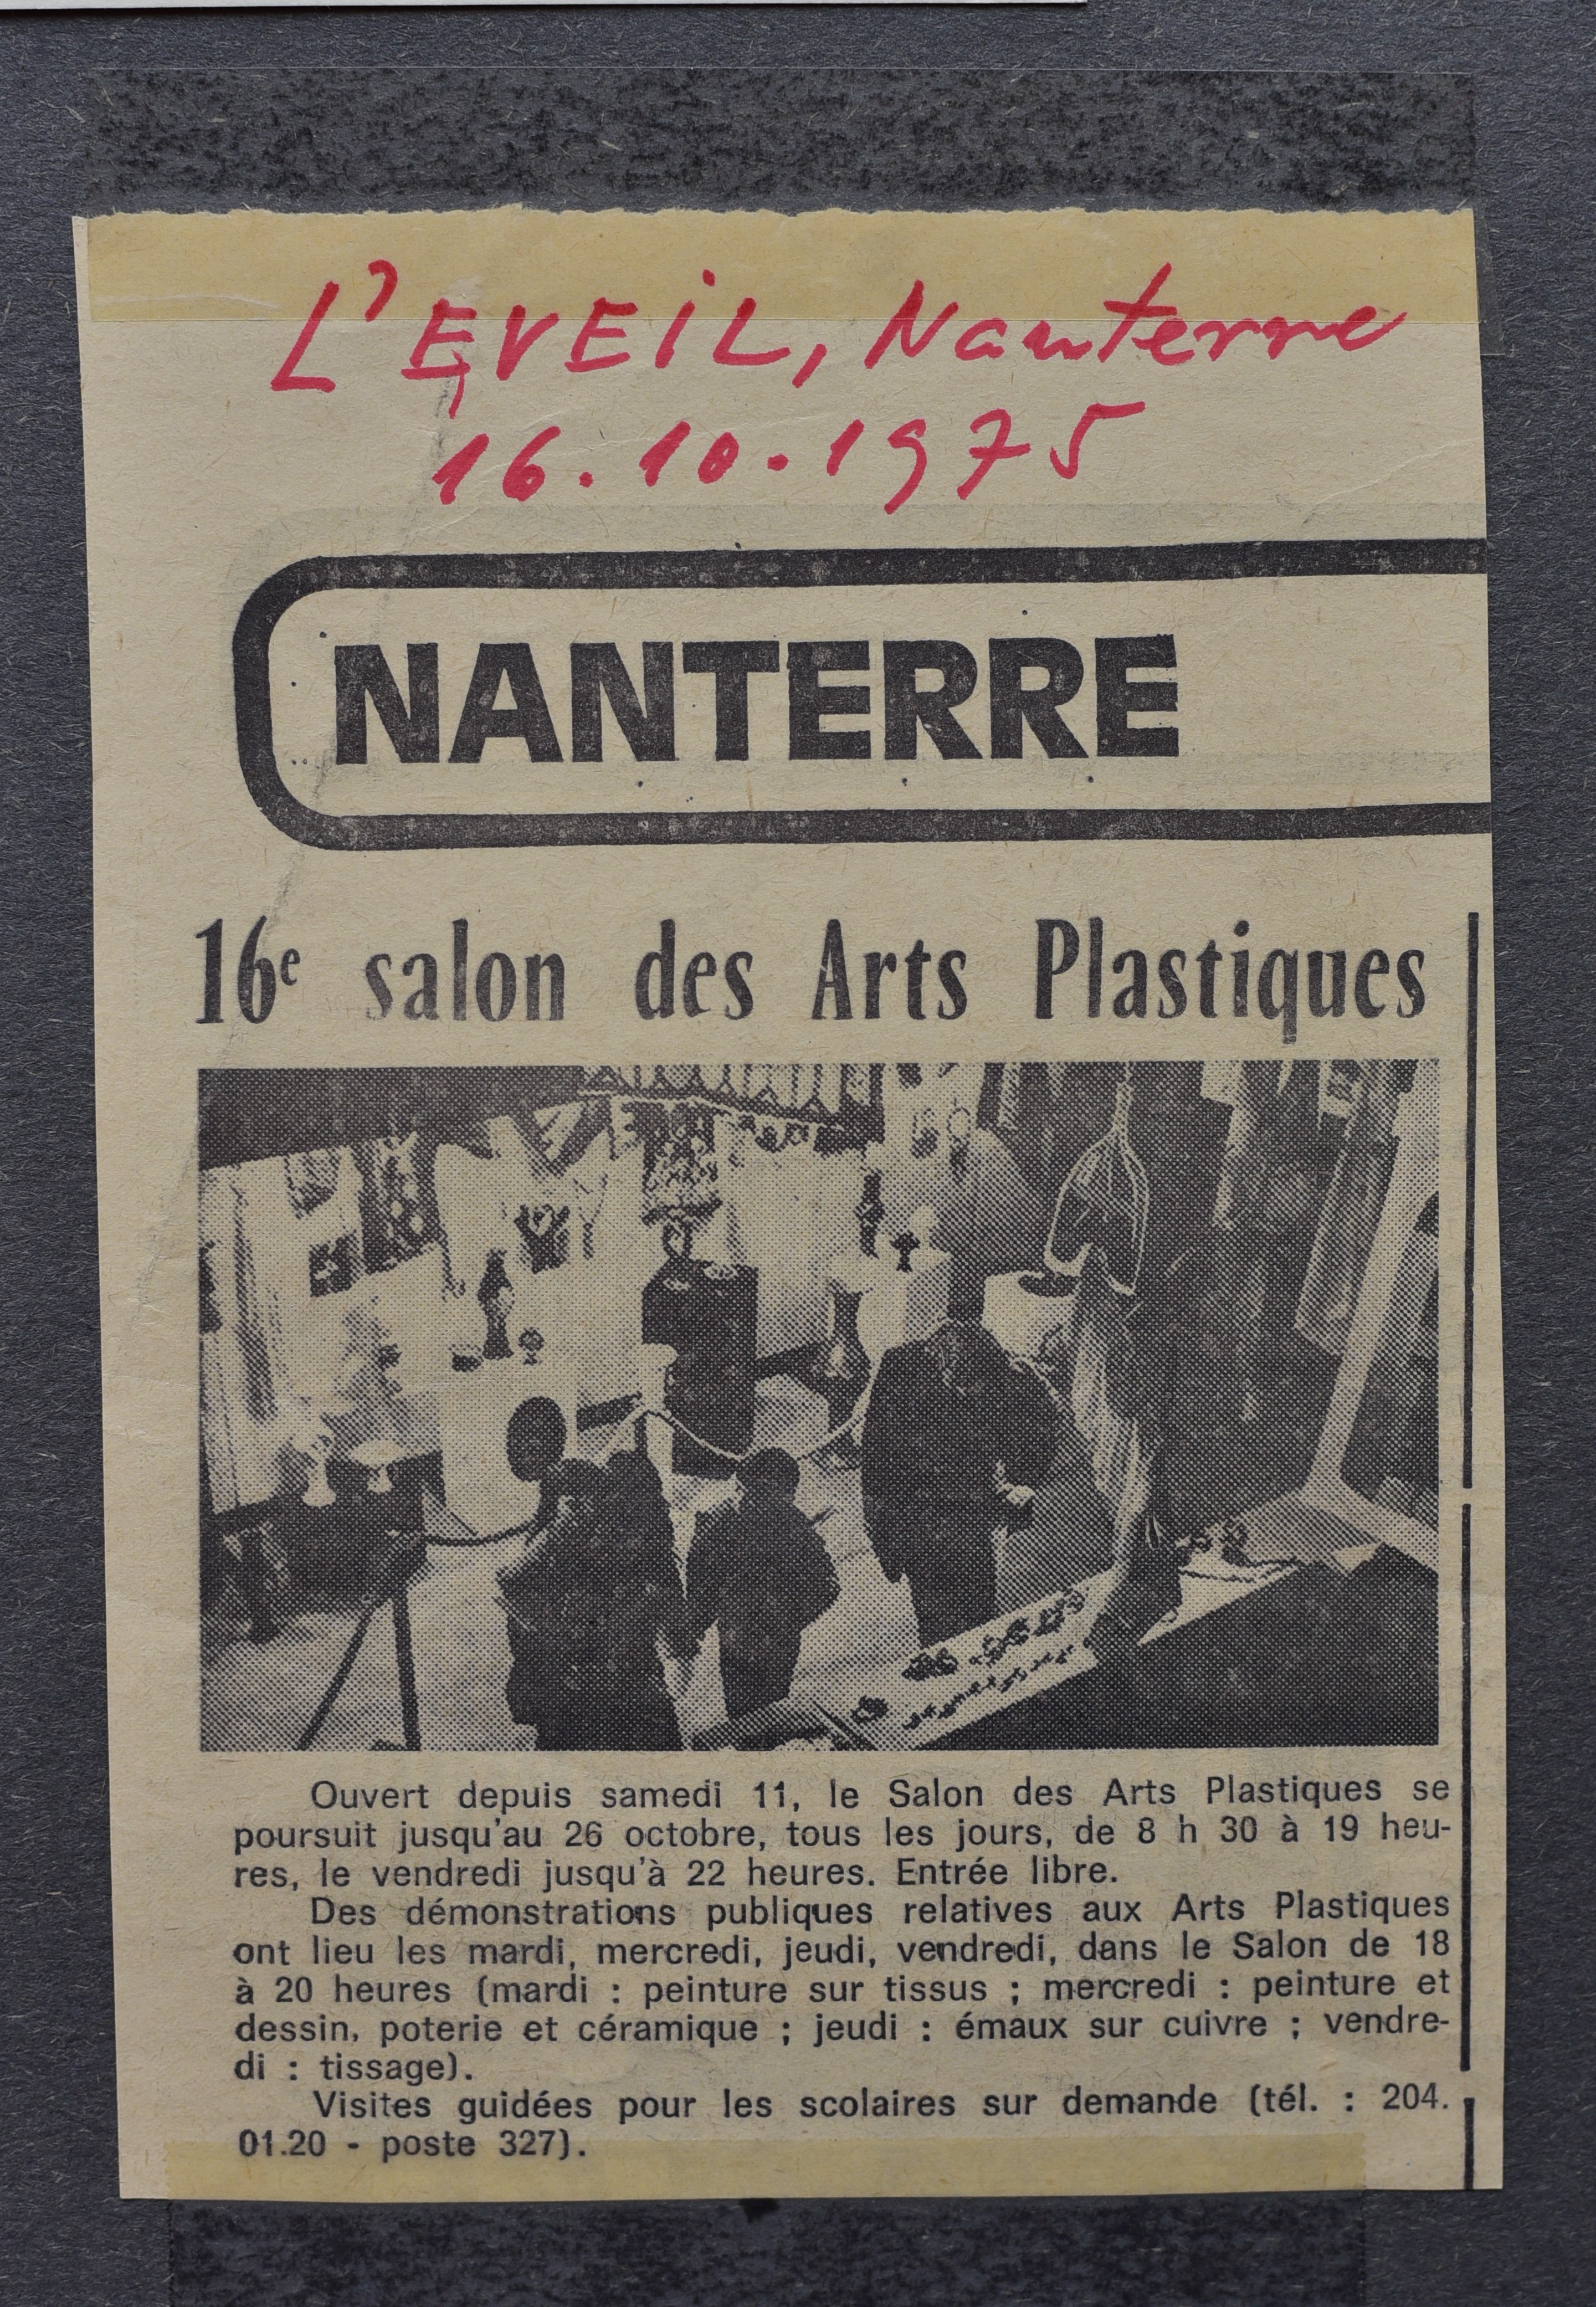 1975 Výstava v Paříži ve čtvrti Nanterre - obrázek 11